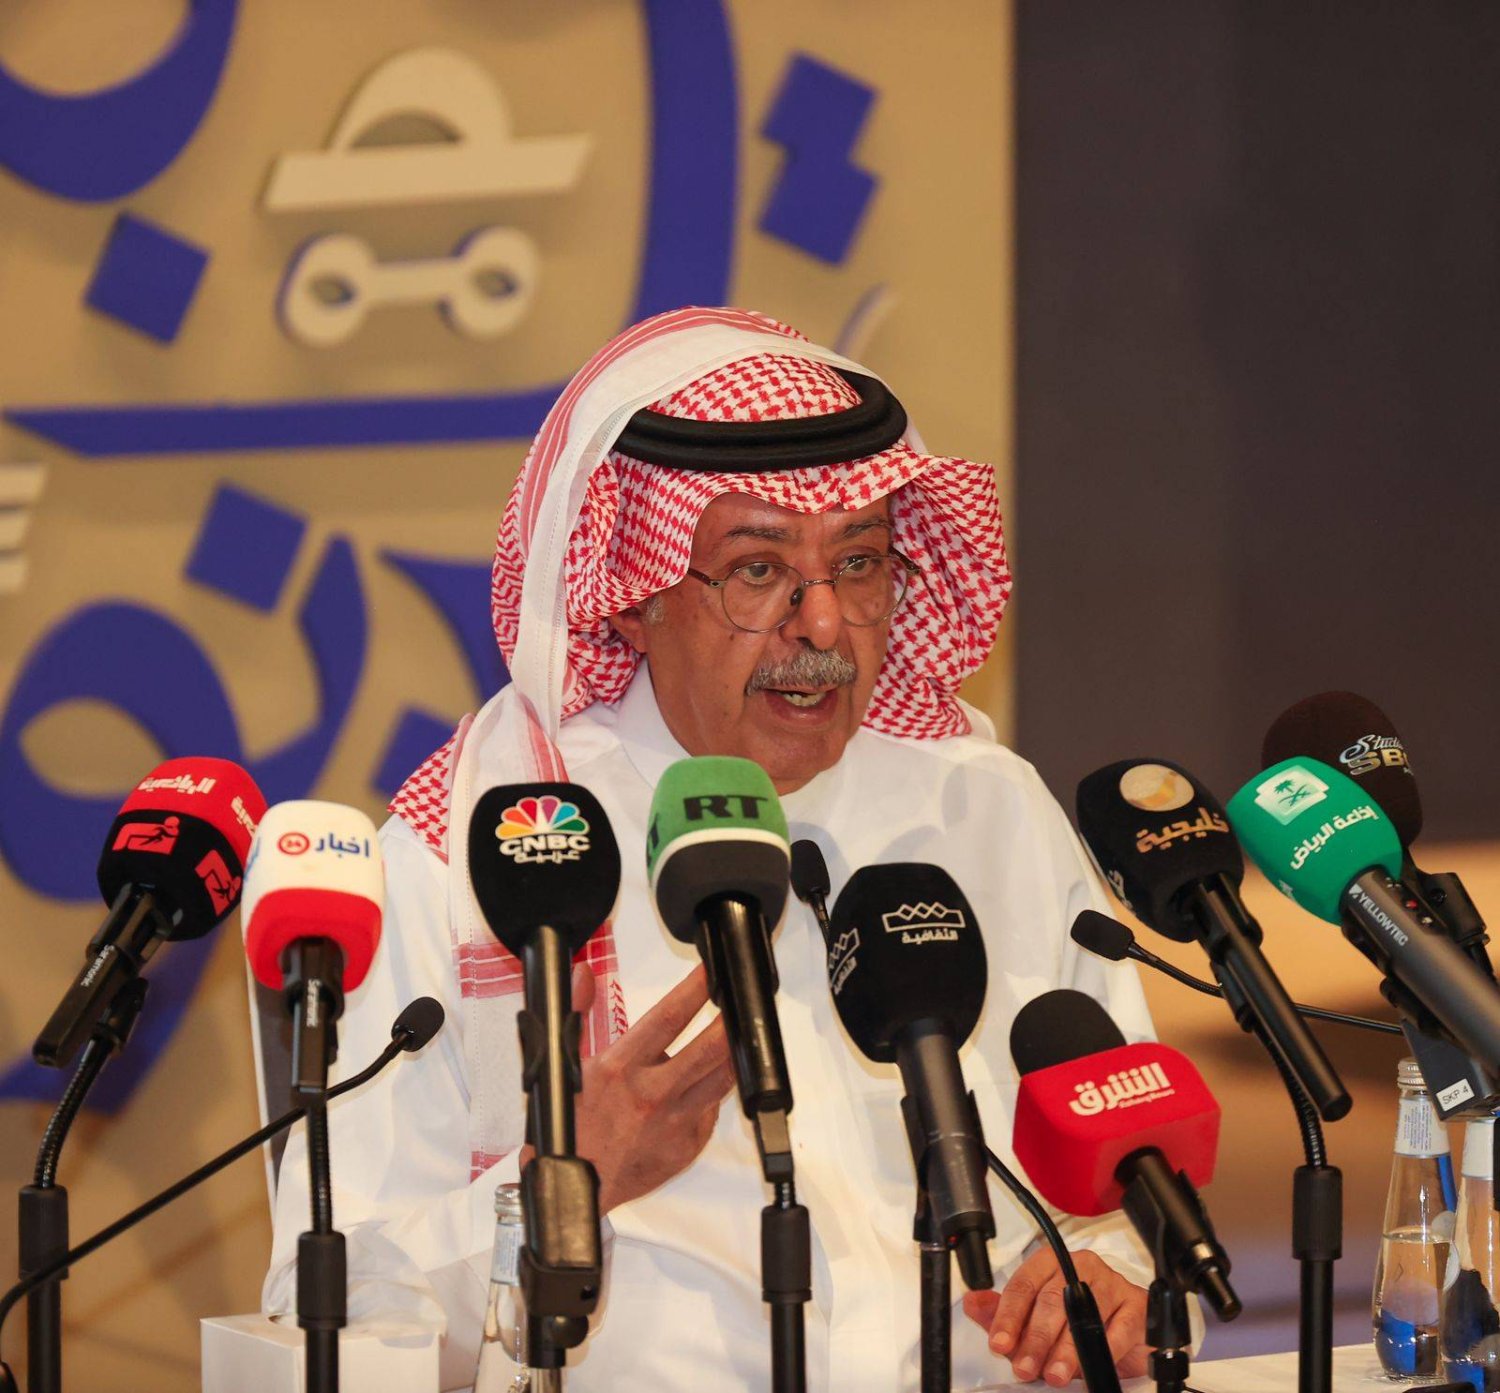 سلطان البازعي الرئيس التنفيذي لهيئة المسرح يتحدث عن تفاصيل العمل خلال مؤتمر صحافي بالرياض (تصوير: صالح الغنام)